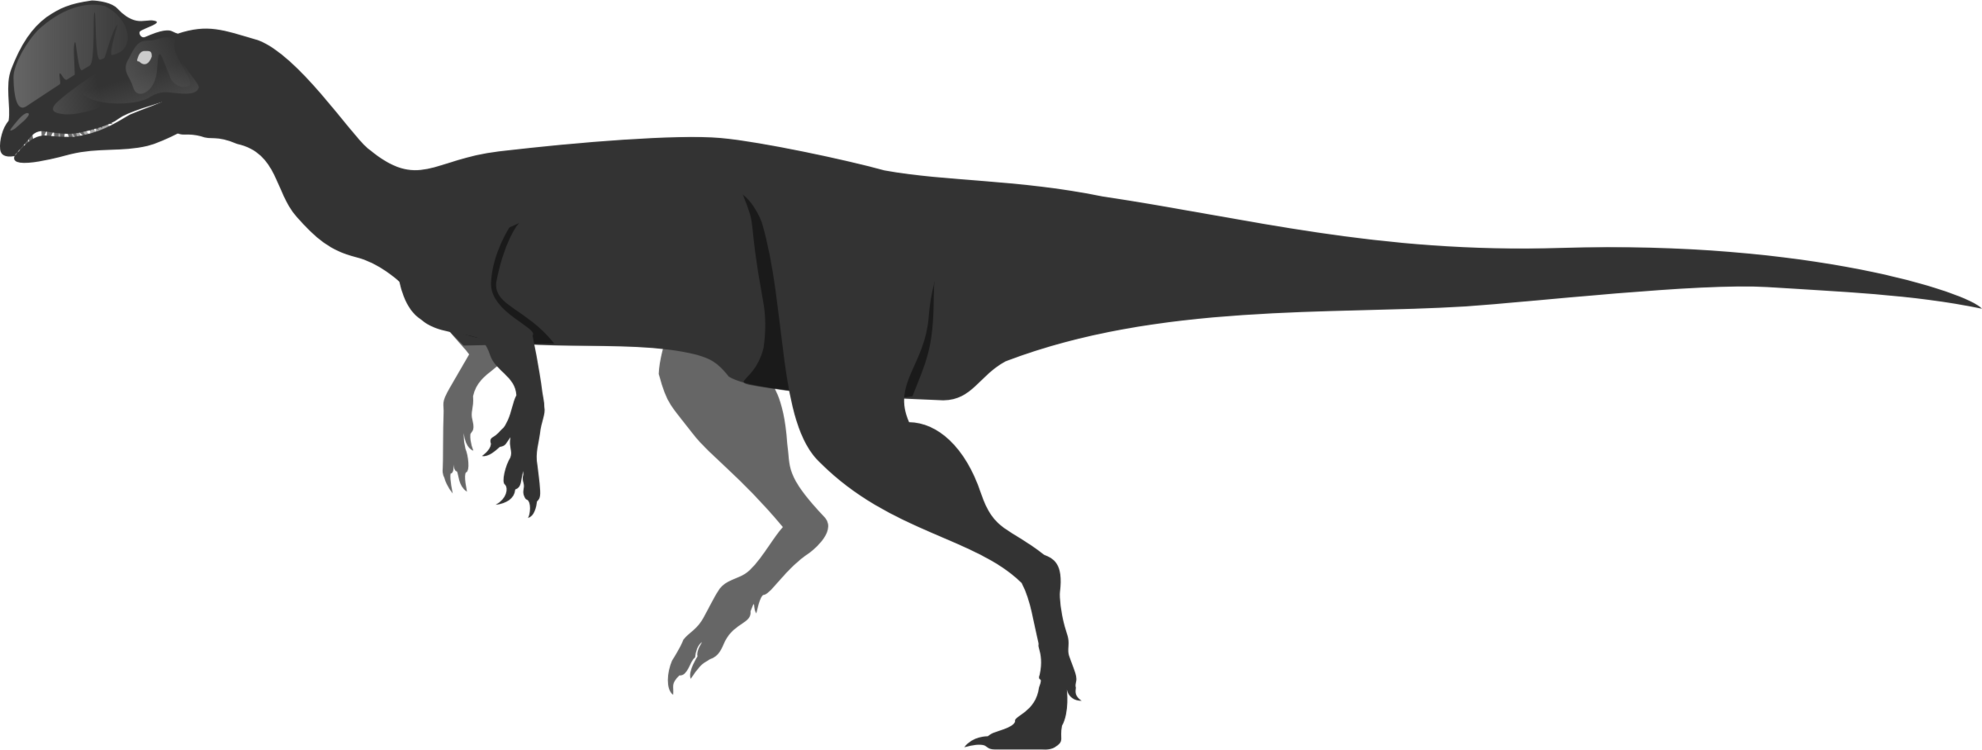 Dinosaur,Tail,Silhouette